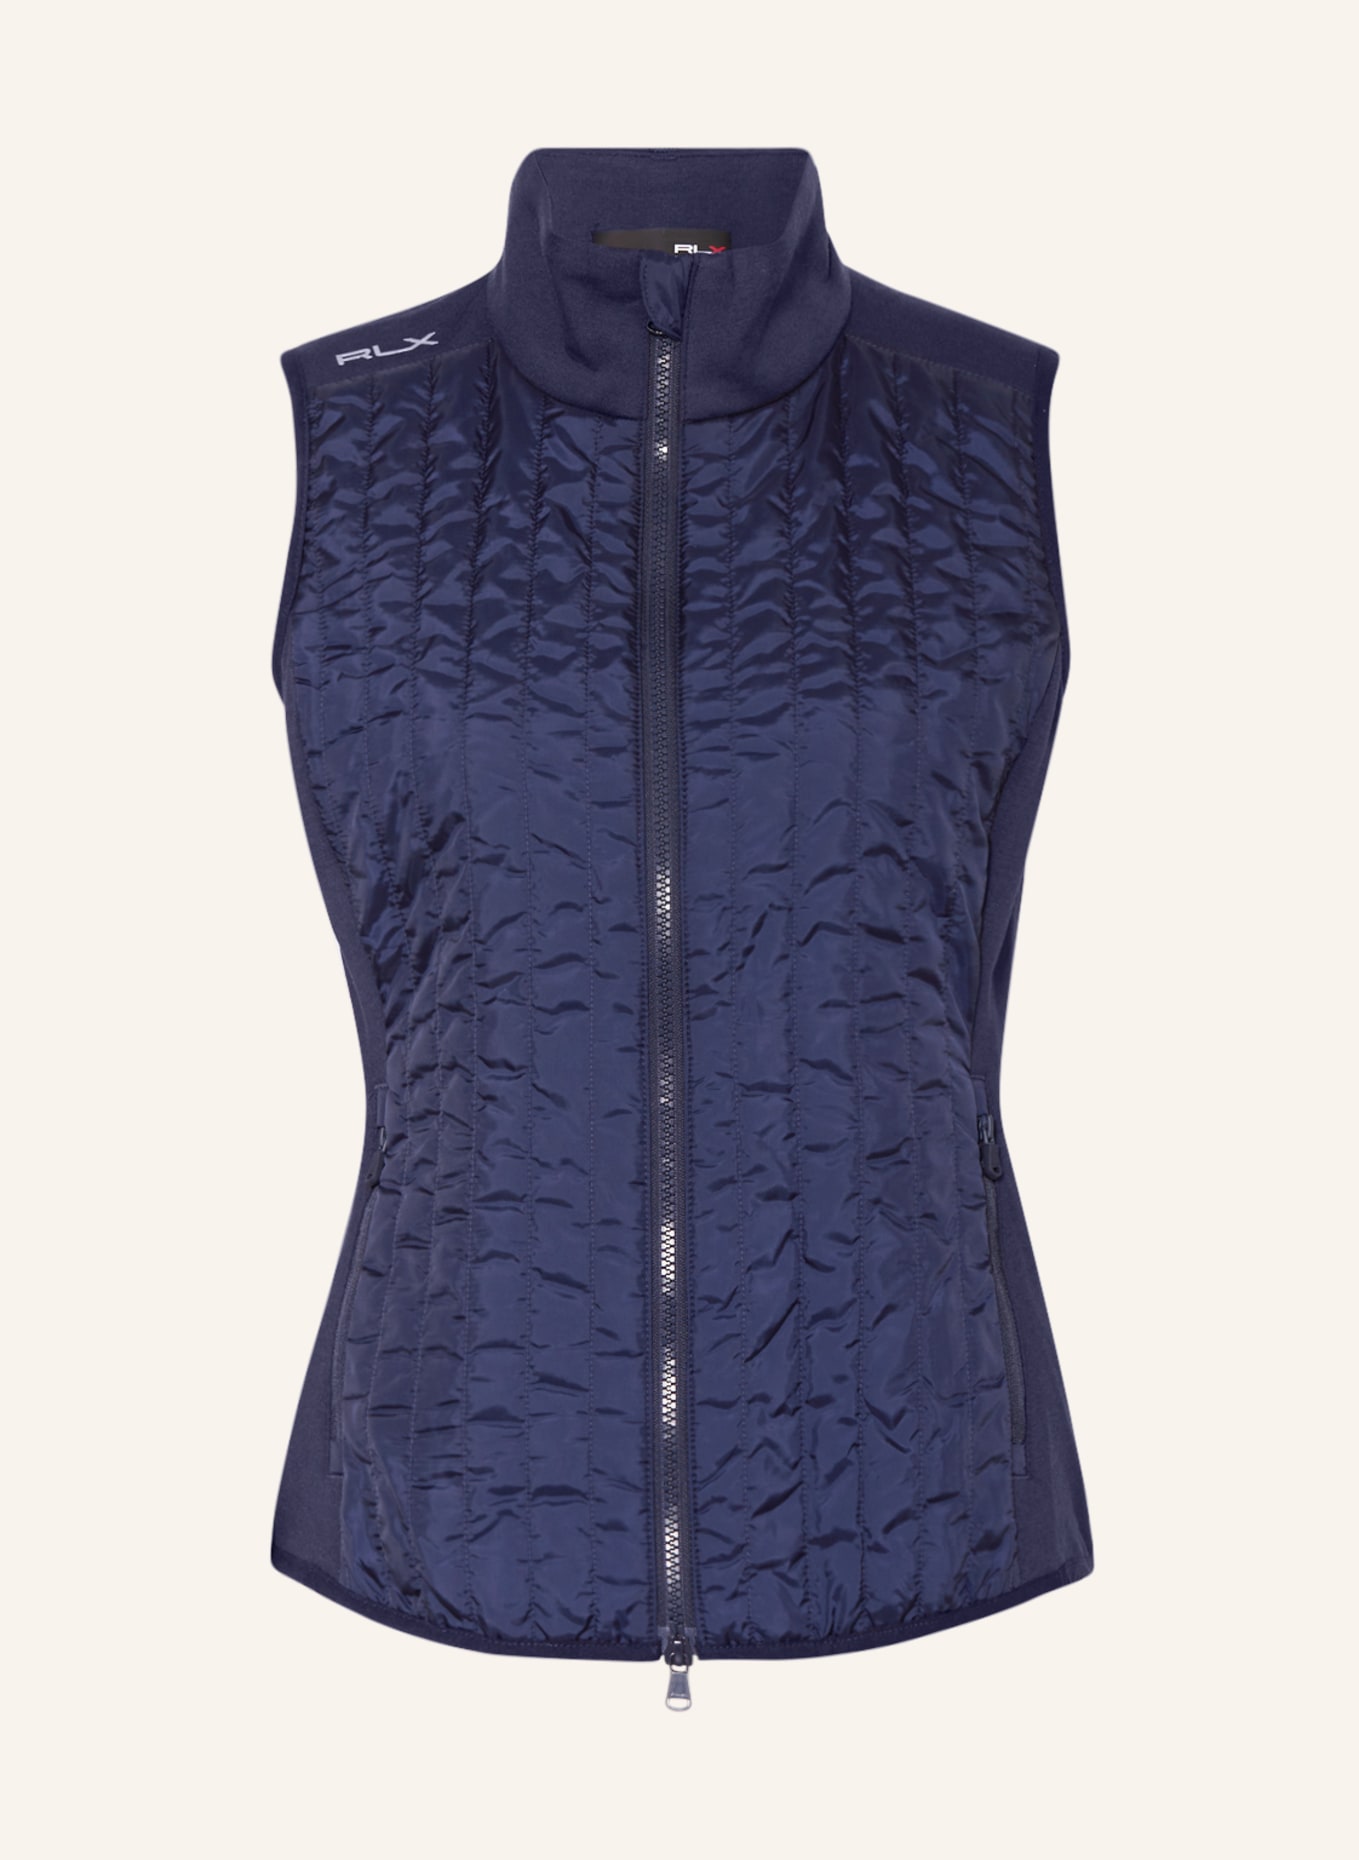 RLX RALPH LAUREN Performance vest, Color: BLUE (Image 1)